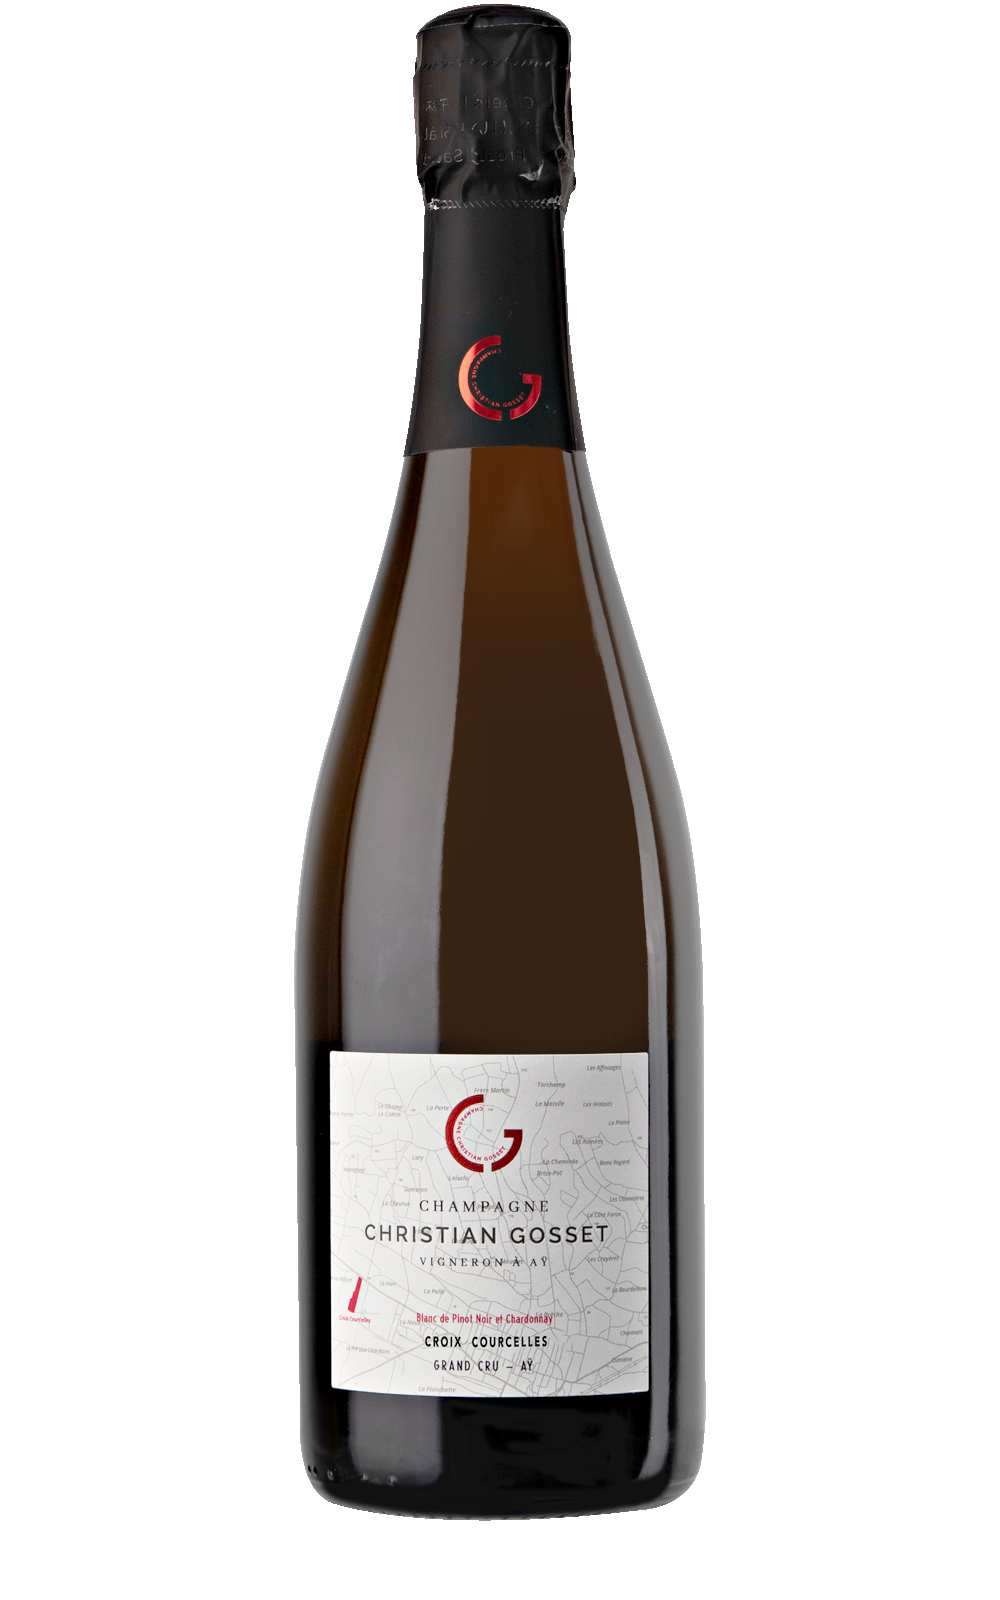 Christian Gosset Champagne Croix Courcelles Frankrijk Aÿ Pinot Noir Chardonnay